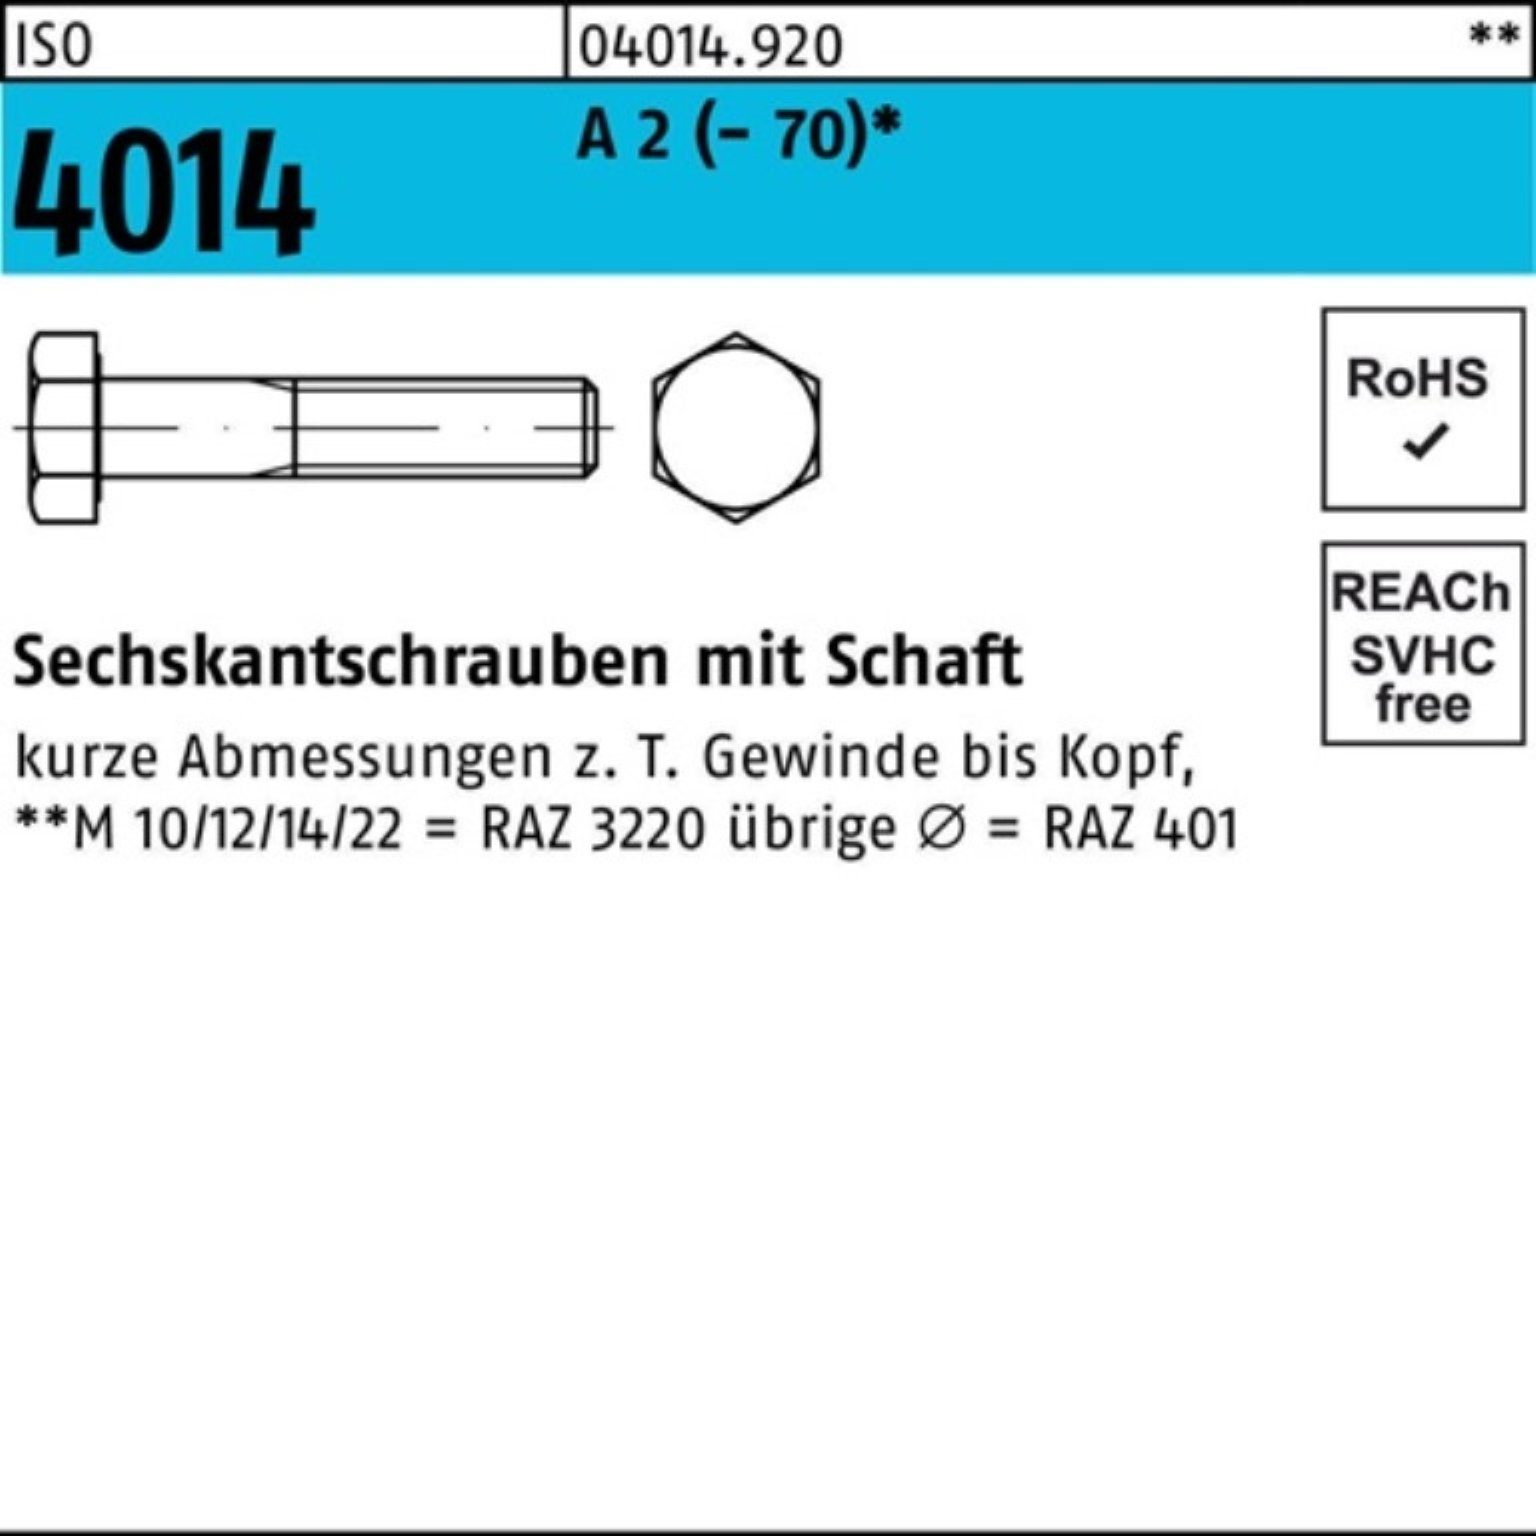 Bufab Sechskantschraube 100er Pack Sechskantschraube ISO 4014 Schaft M10x 160 A 2 (70) 50 St